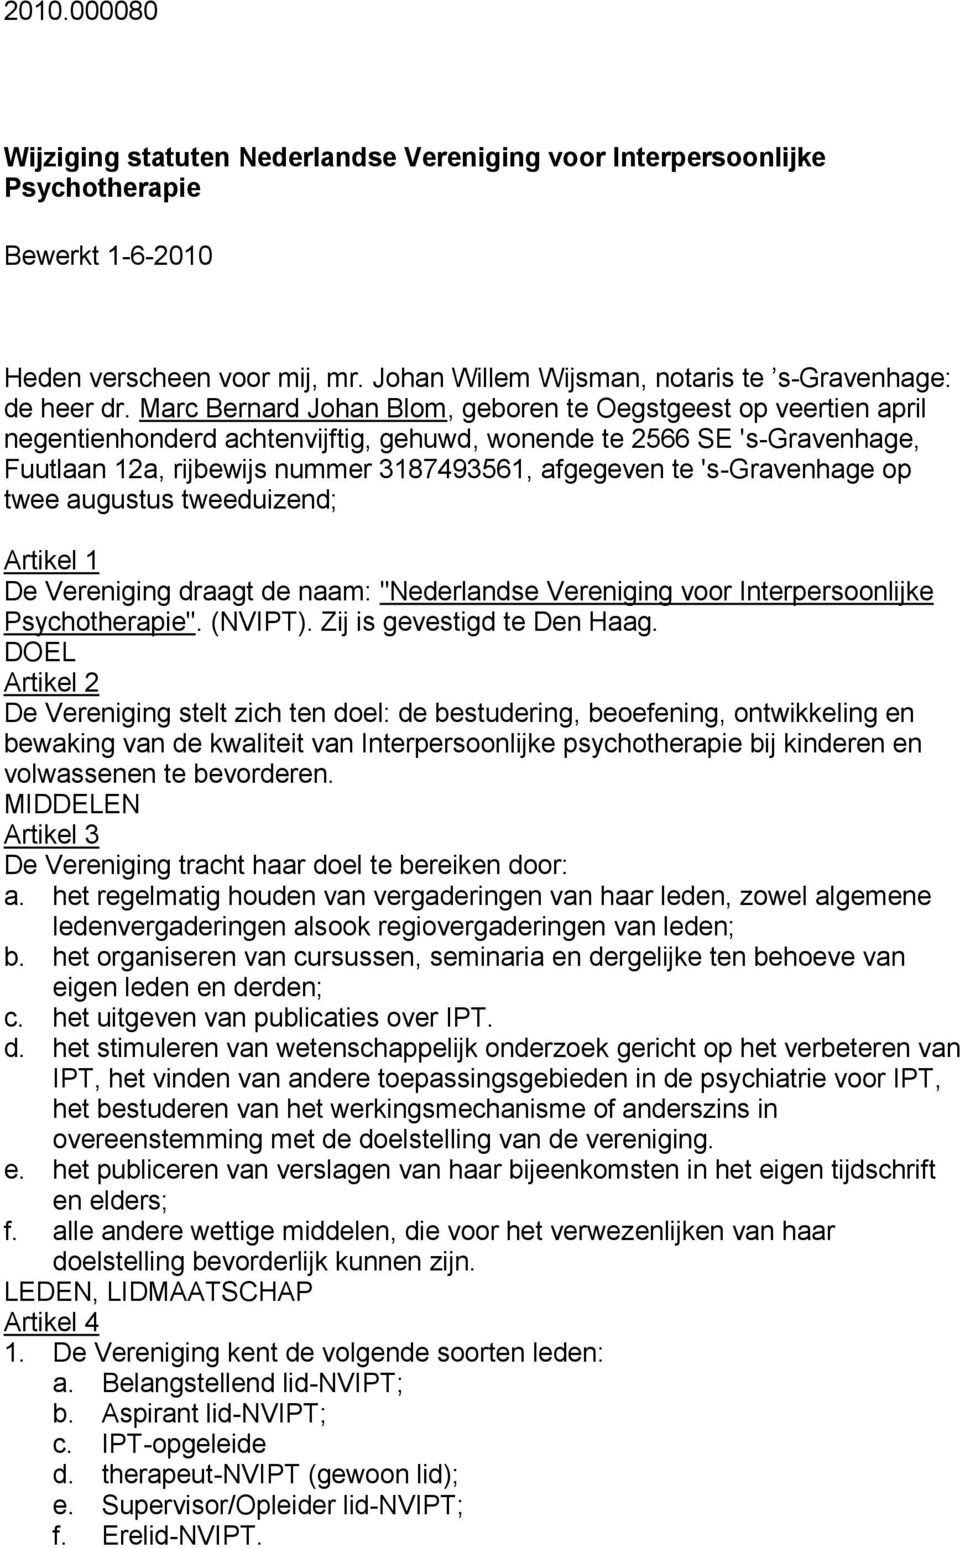 's-gravenhage op twee augustus tweeduizend; Artikel 1 De Vereniging draagt de naam: "Nederlandse Vereniging voor Interpersoonlijke Psychotherapie". (NVIPT). Zij is gevestigd te Den Haag.